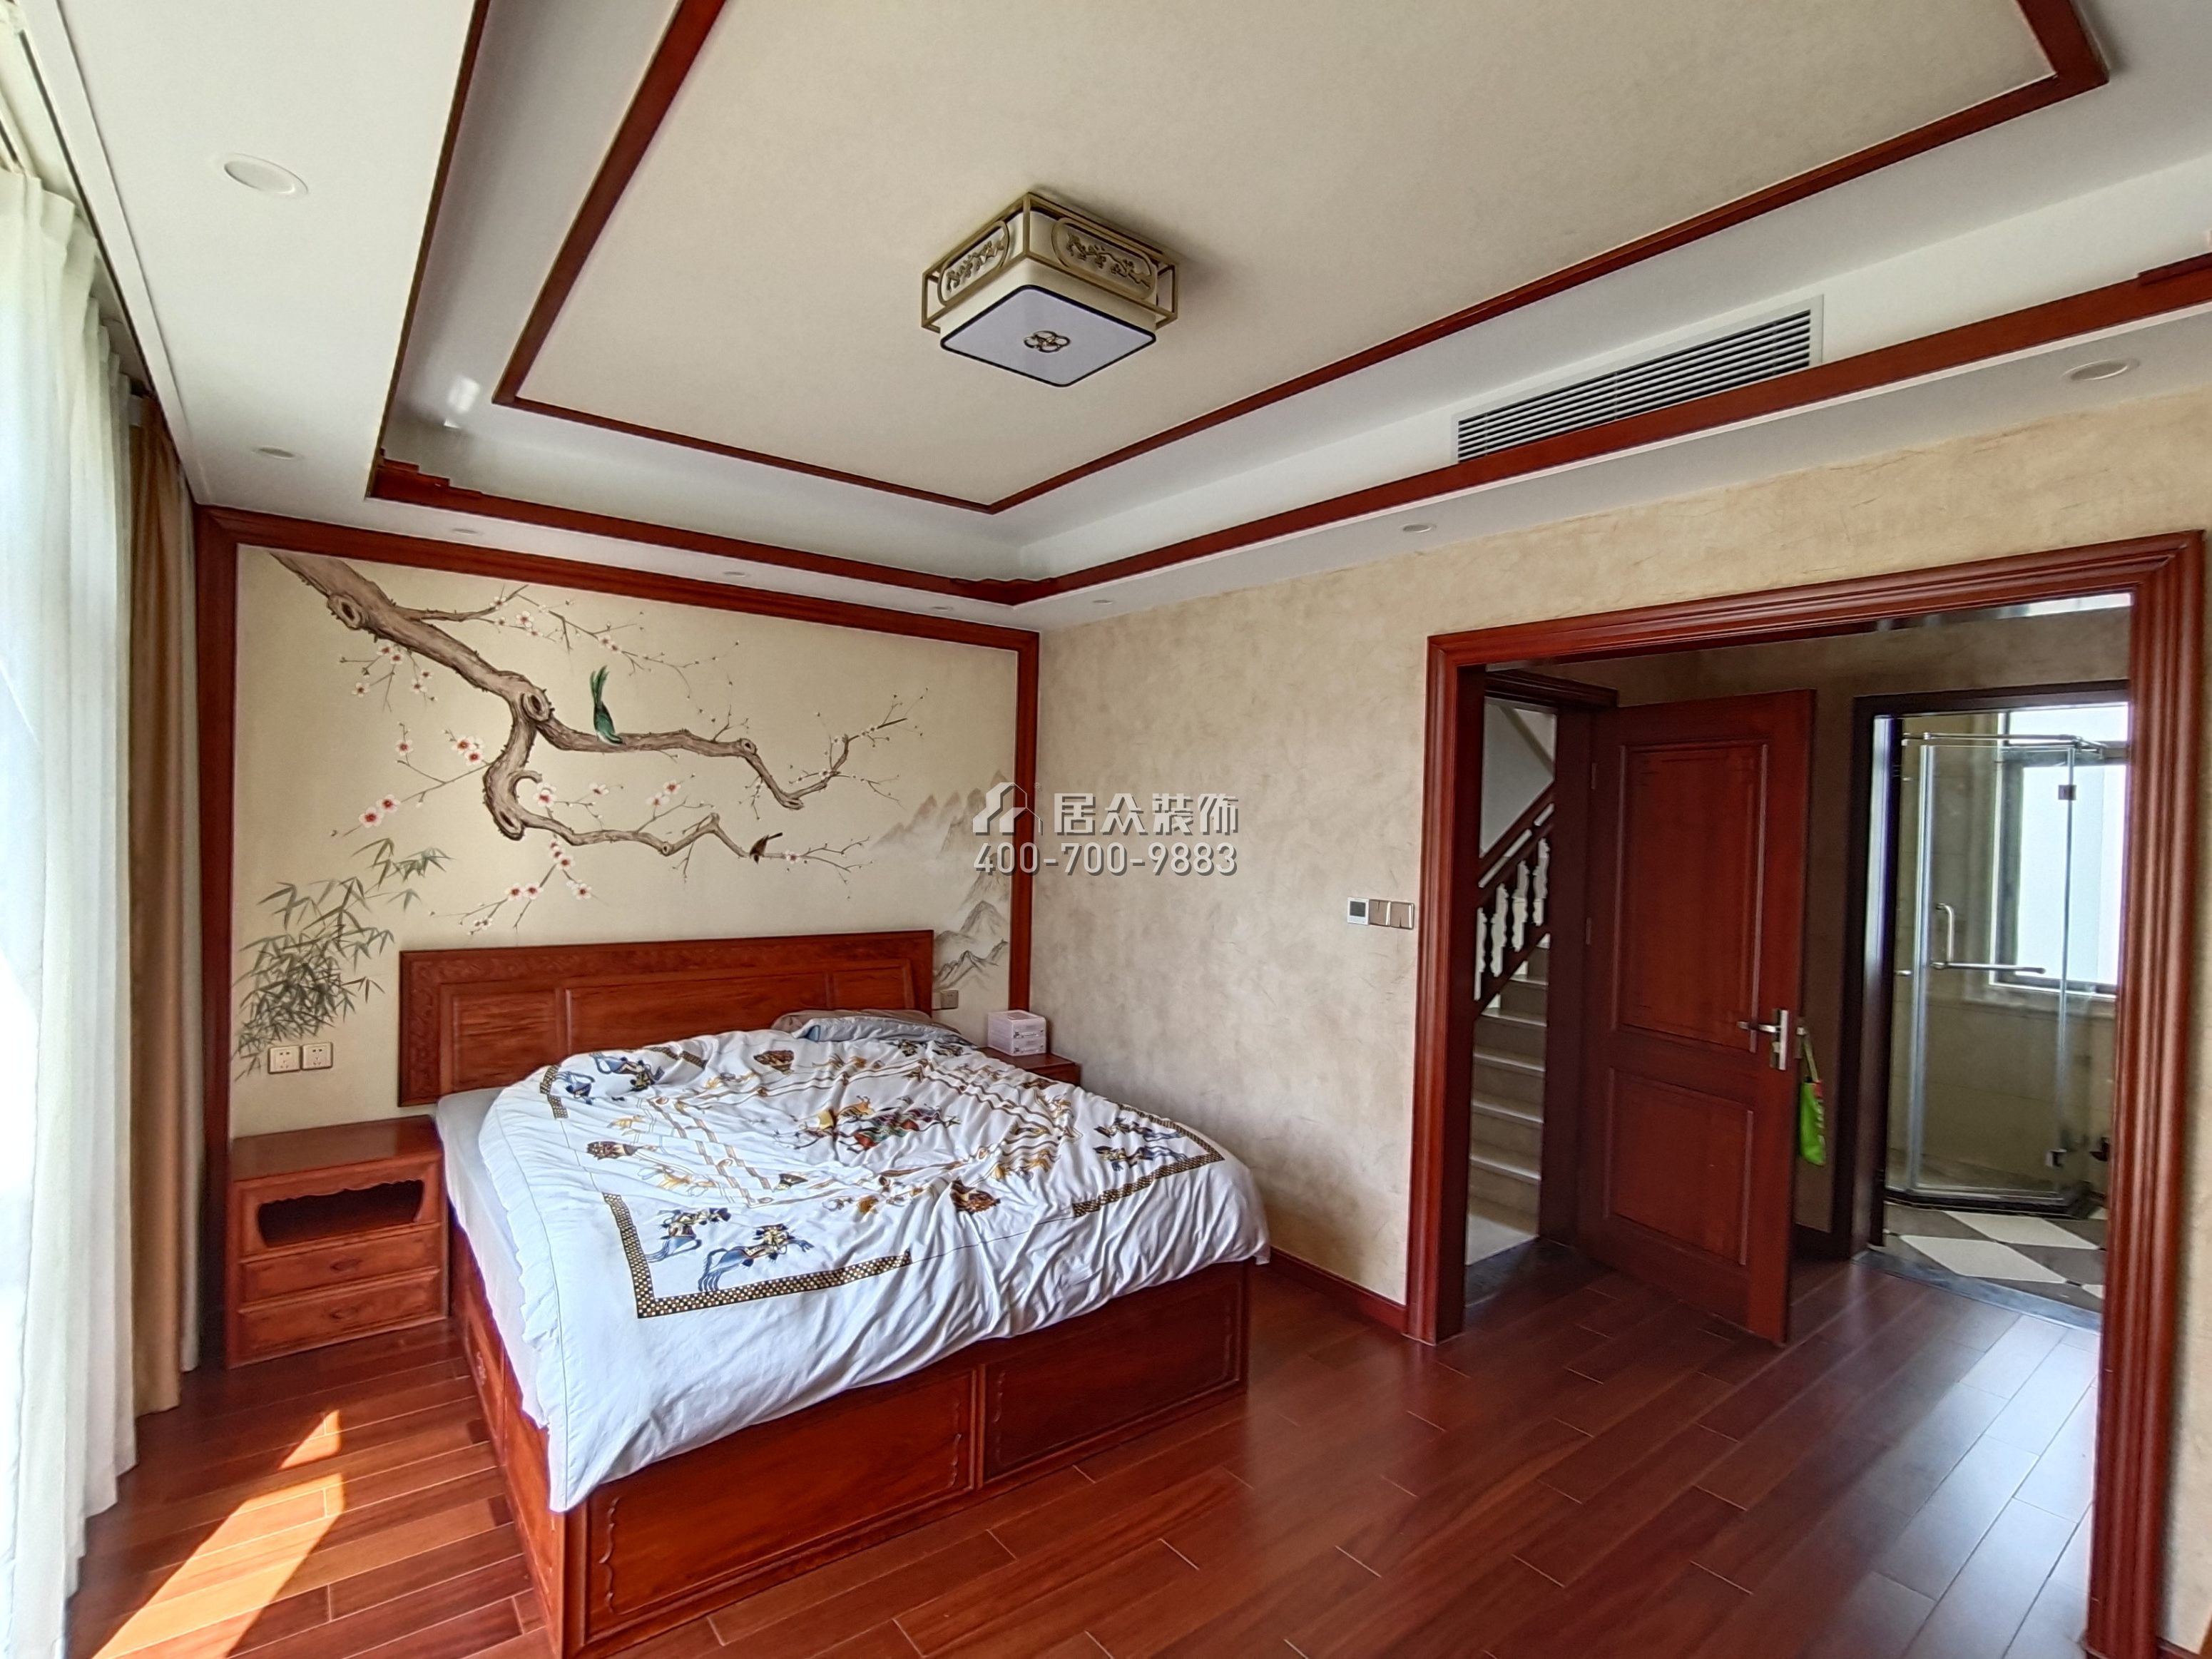 大朗碧桂园350平方米中式风格别墅户型卧室装修效果图